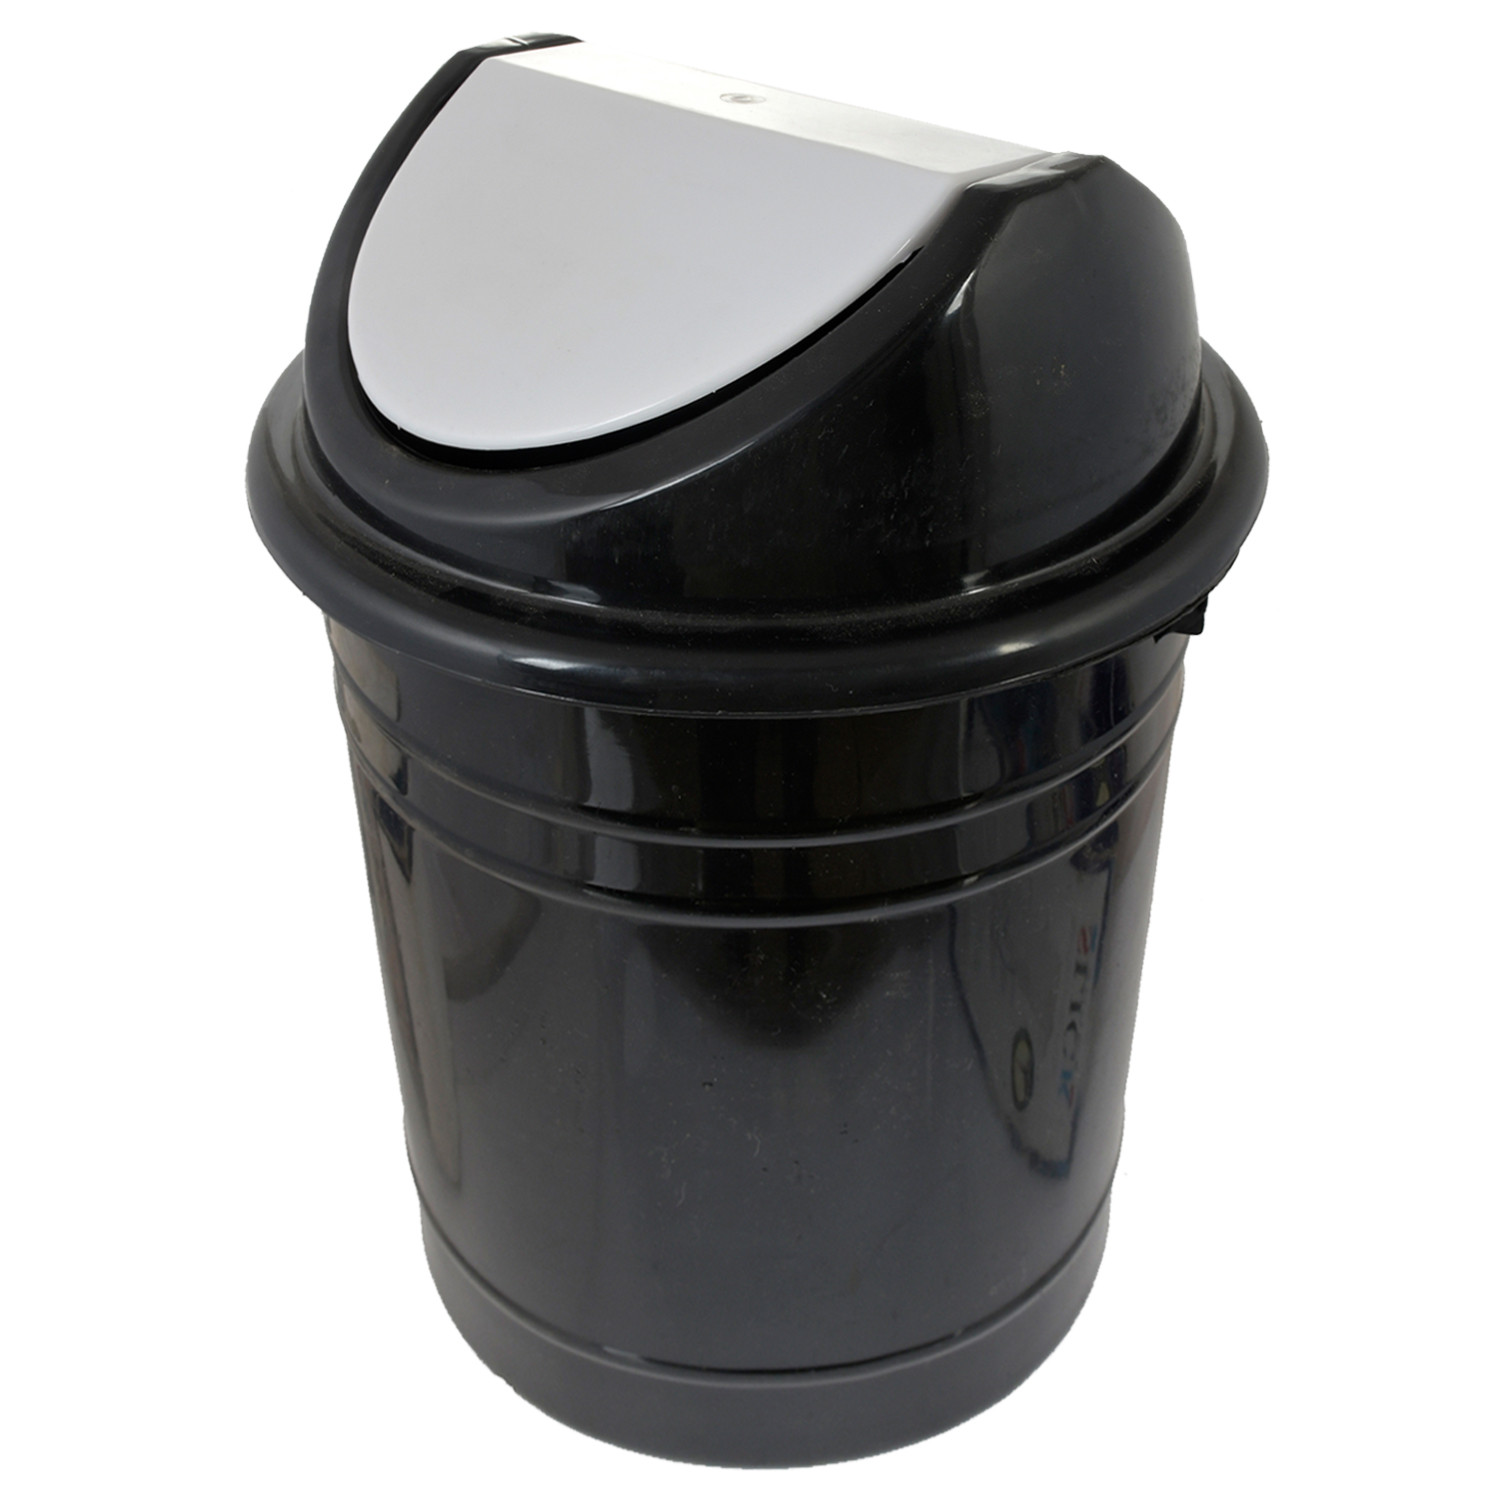 Kuber Industries Plastic 2 Pieces Medium Size Swing Dustbin/ Swing Garbage Bin/ Waste Bin, 10 Liters (Black & Blue)